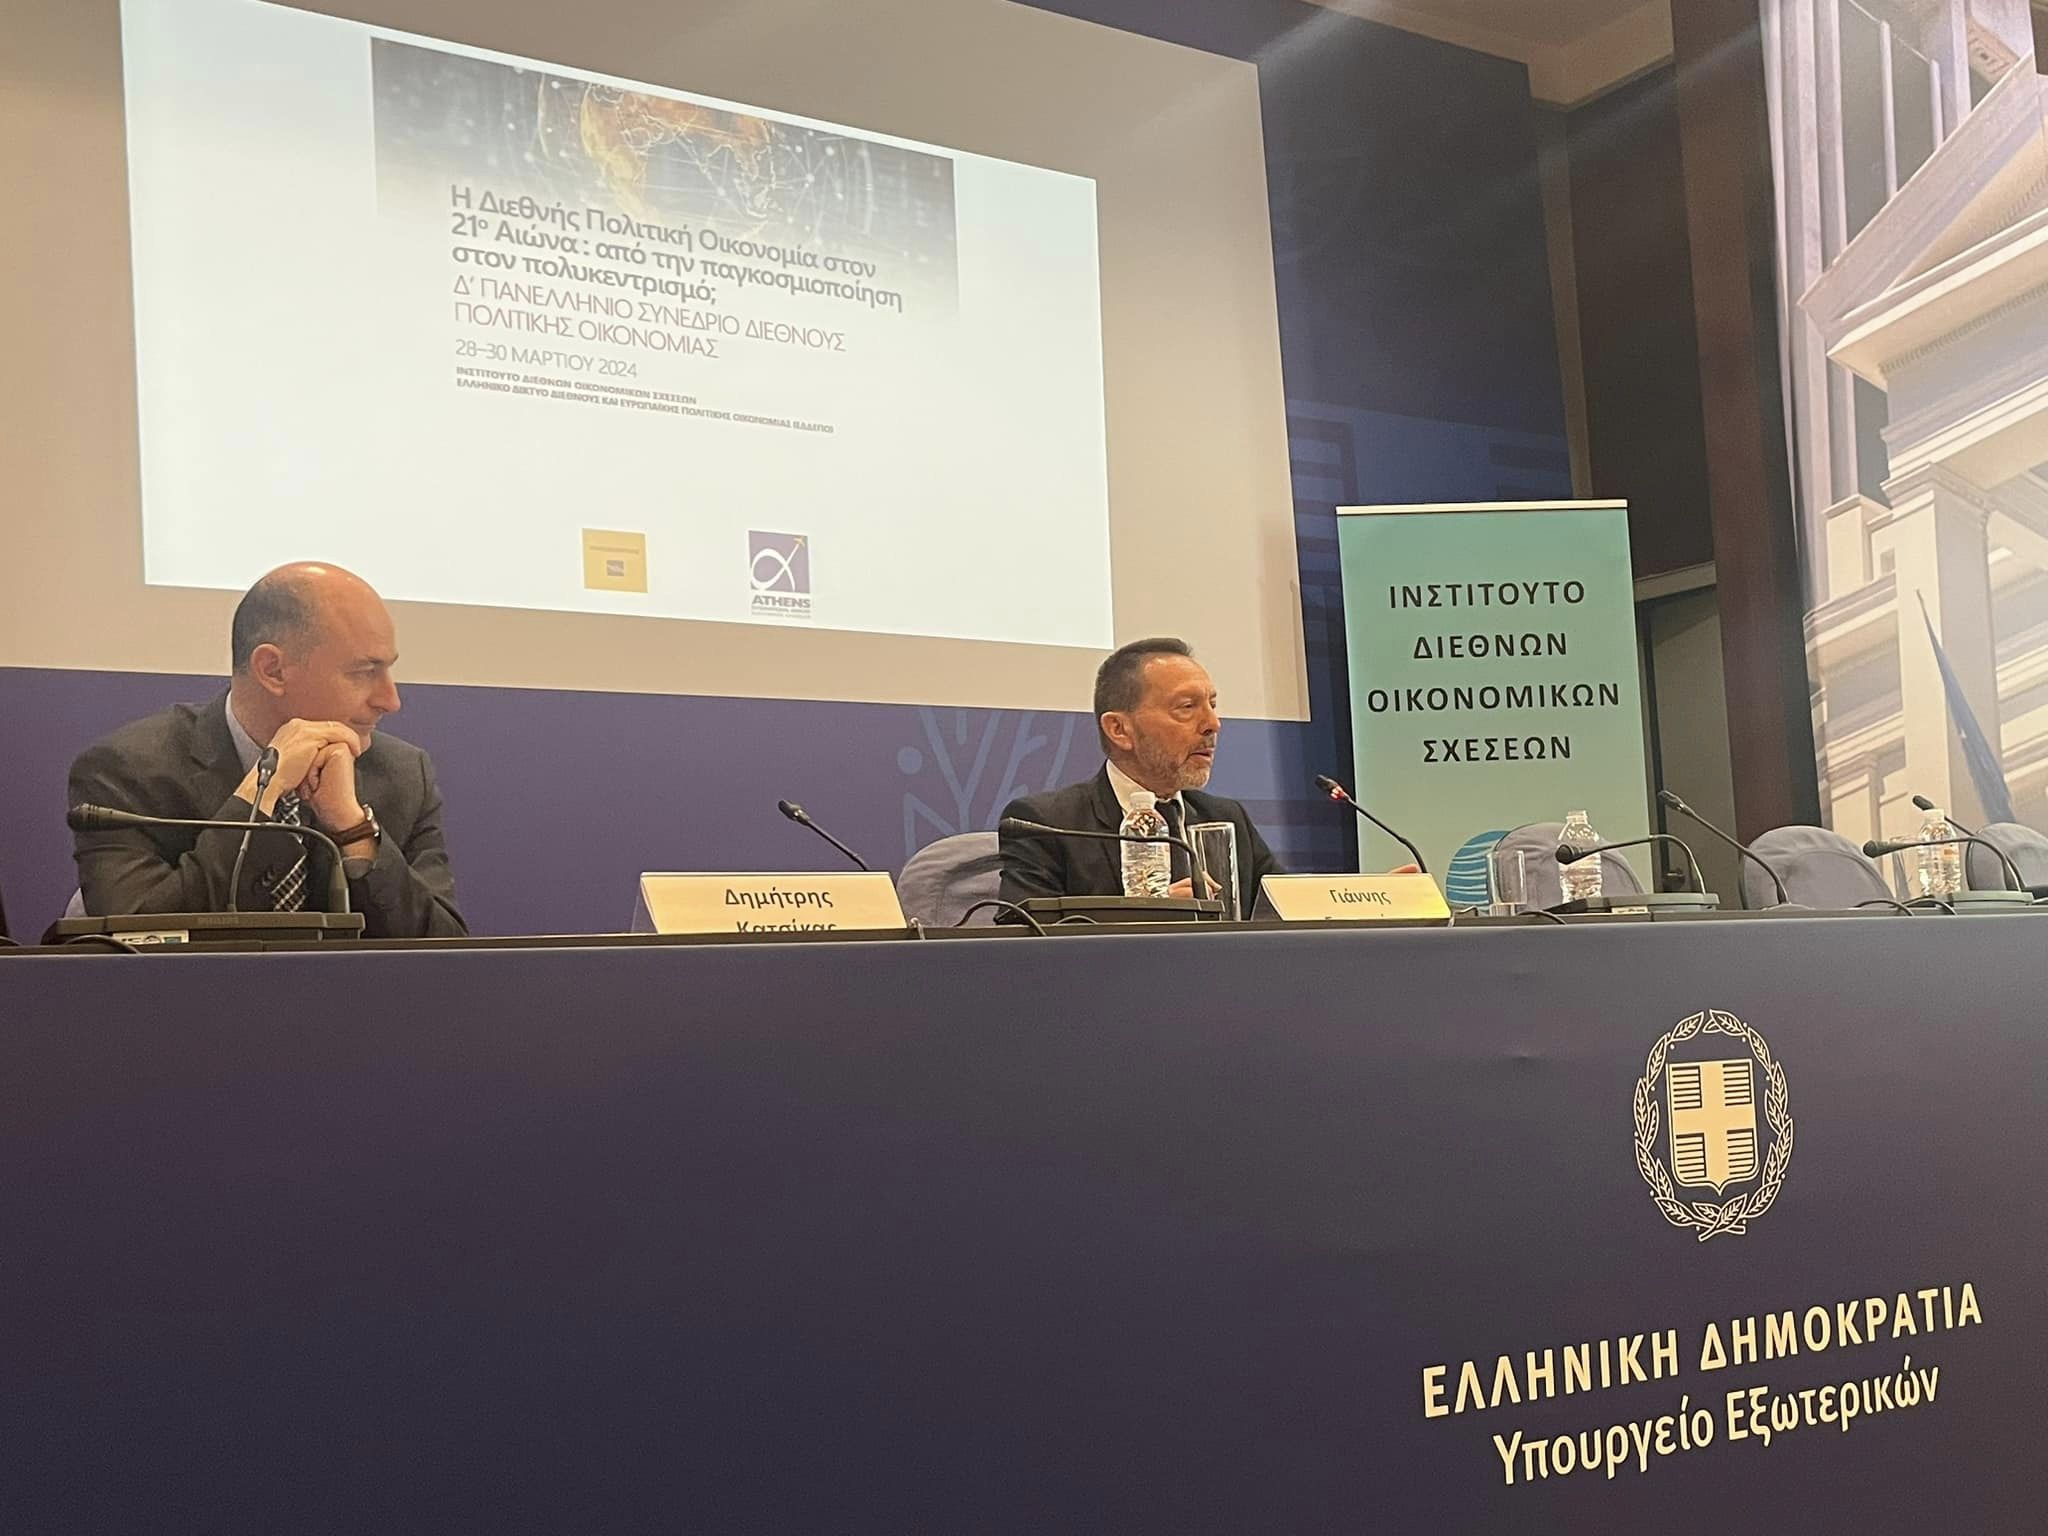 Δ’ Πανελλήνιο Συνέδριο Διεθνούς Πολιτικής Οικονομίας: Η ομιλία του Διοικητή της Τράπεζας της Ελλάδας, κ. Στουρνάρα